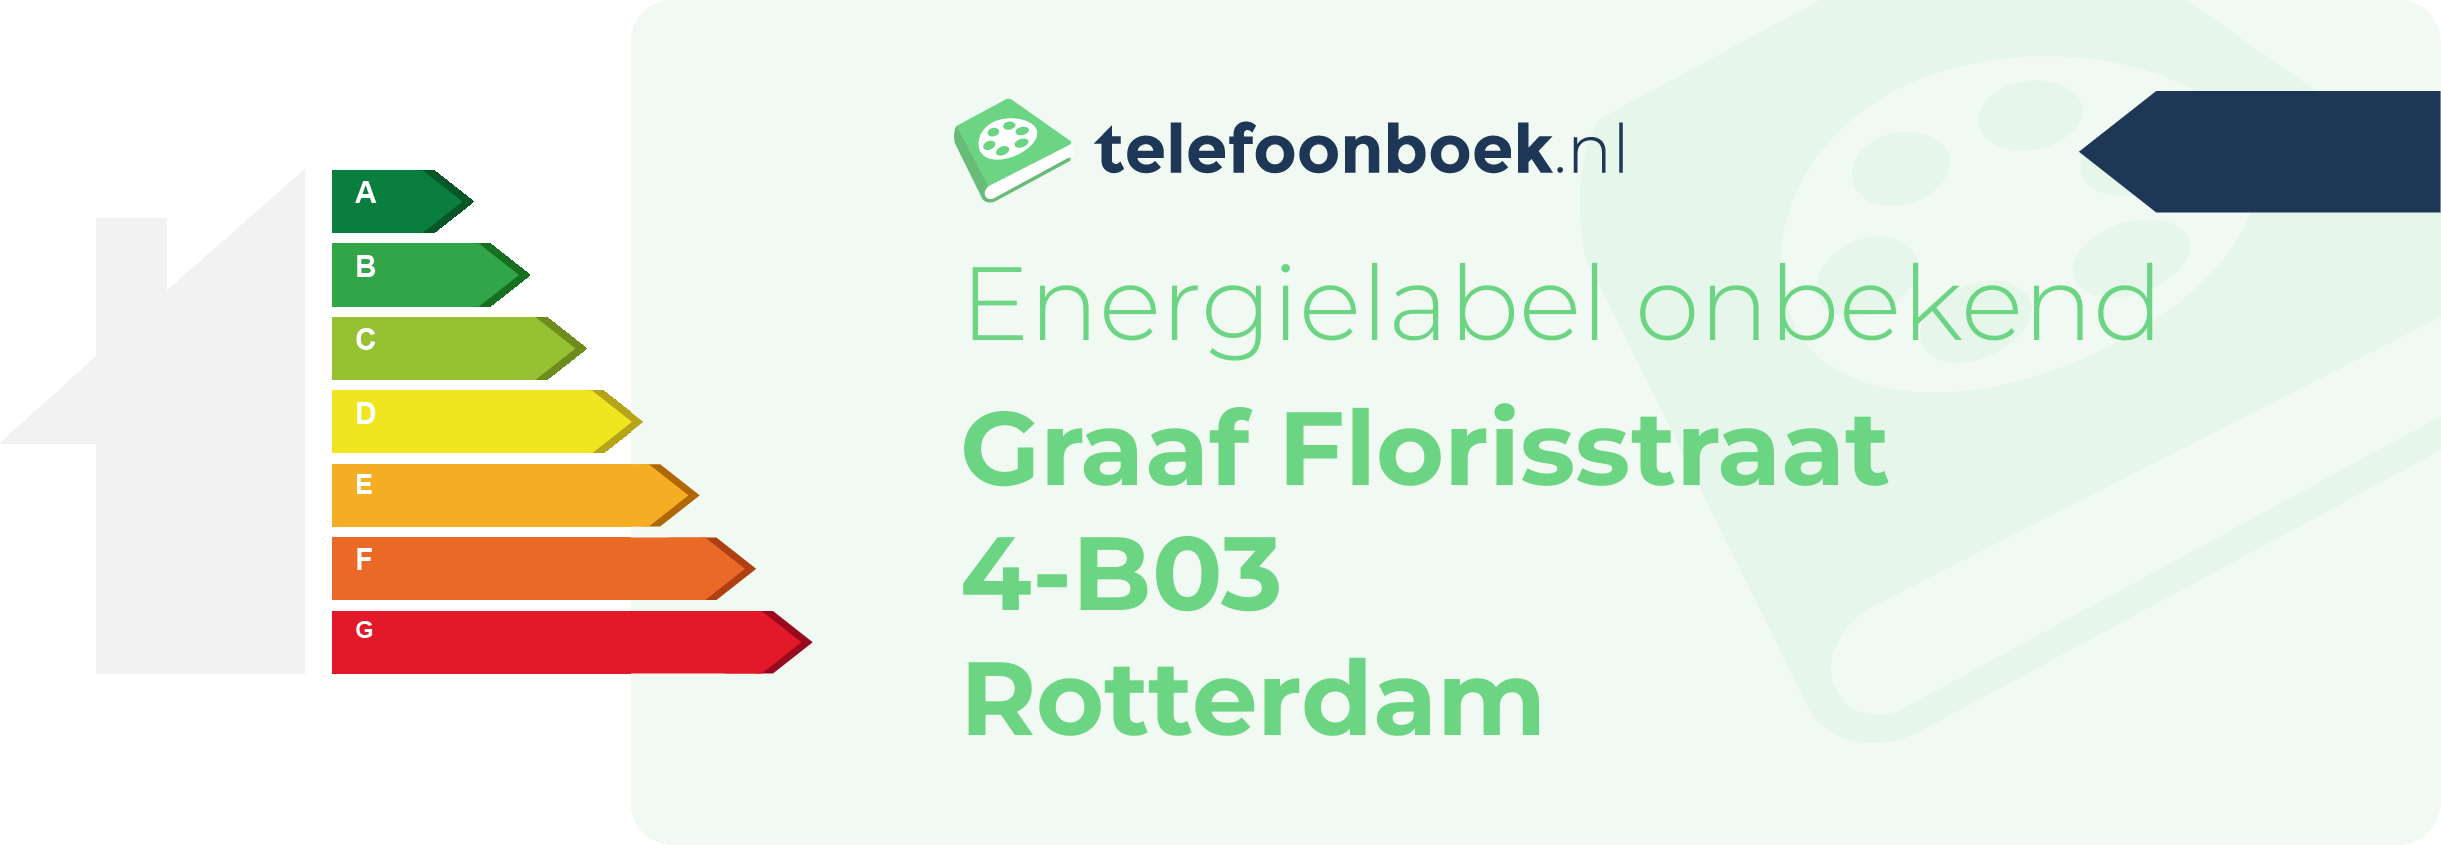 Energielabel Graaf Florisstraat 4-B03 Rotterdam